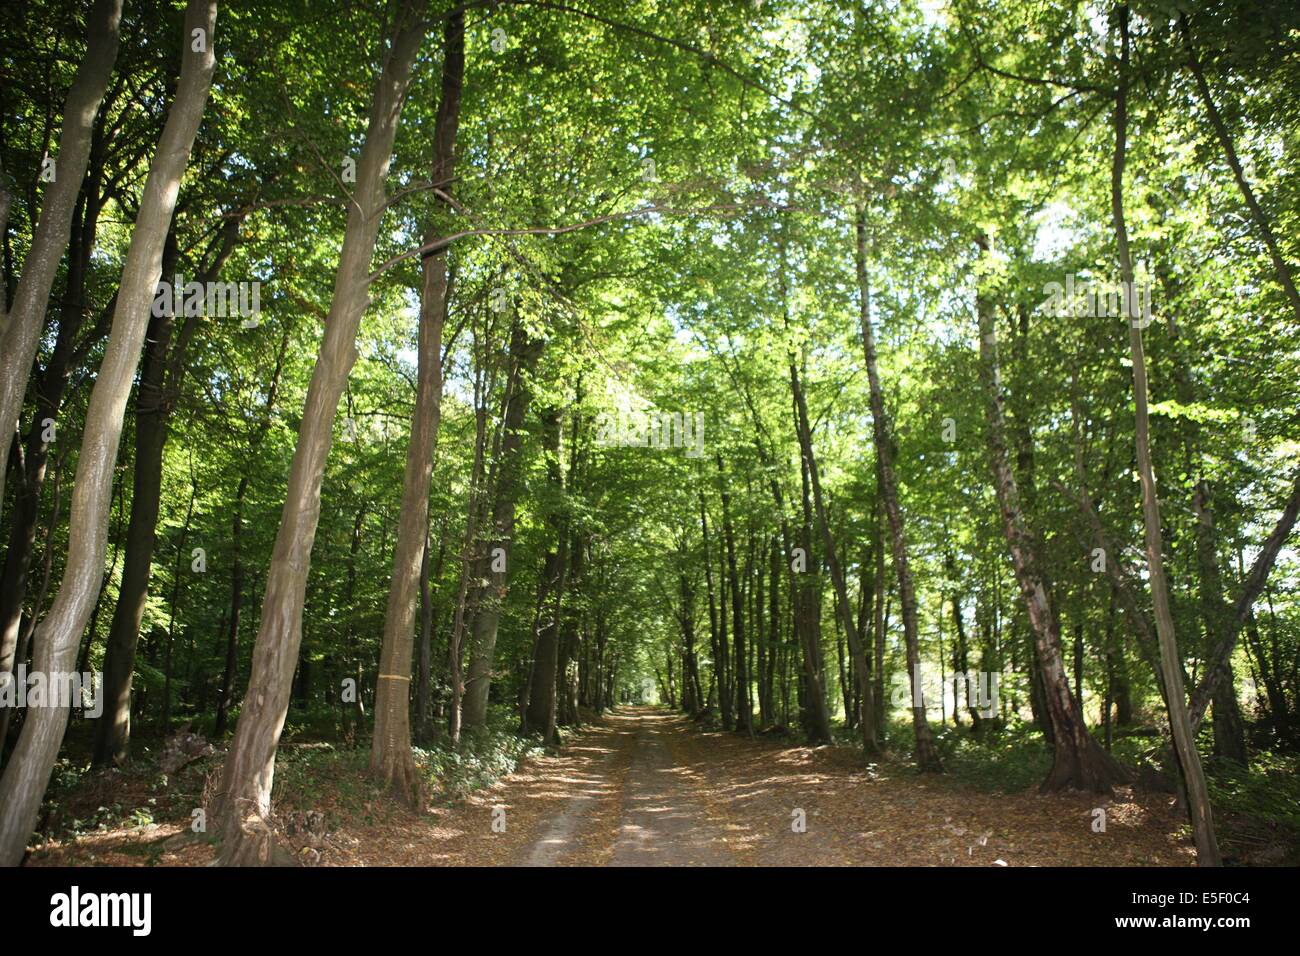 Accueil - France Bois Forêt